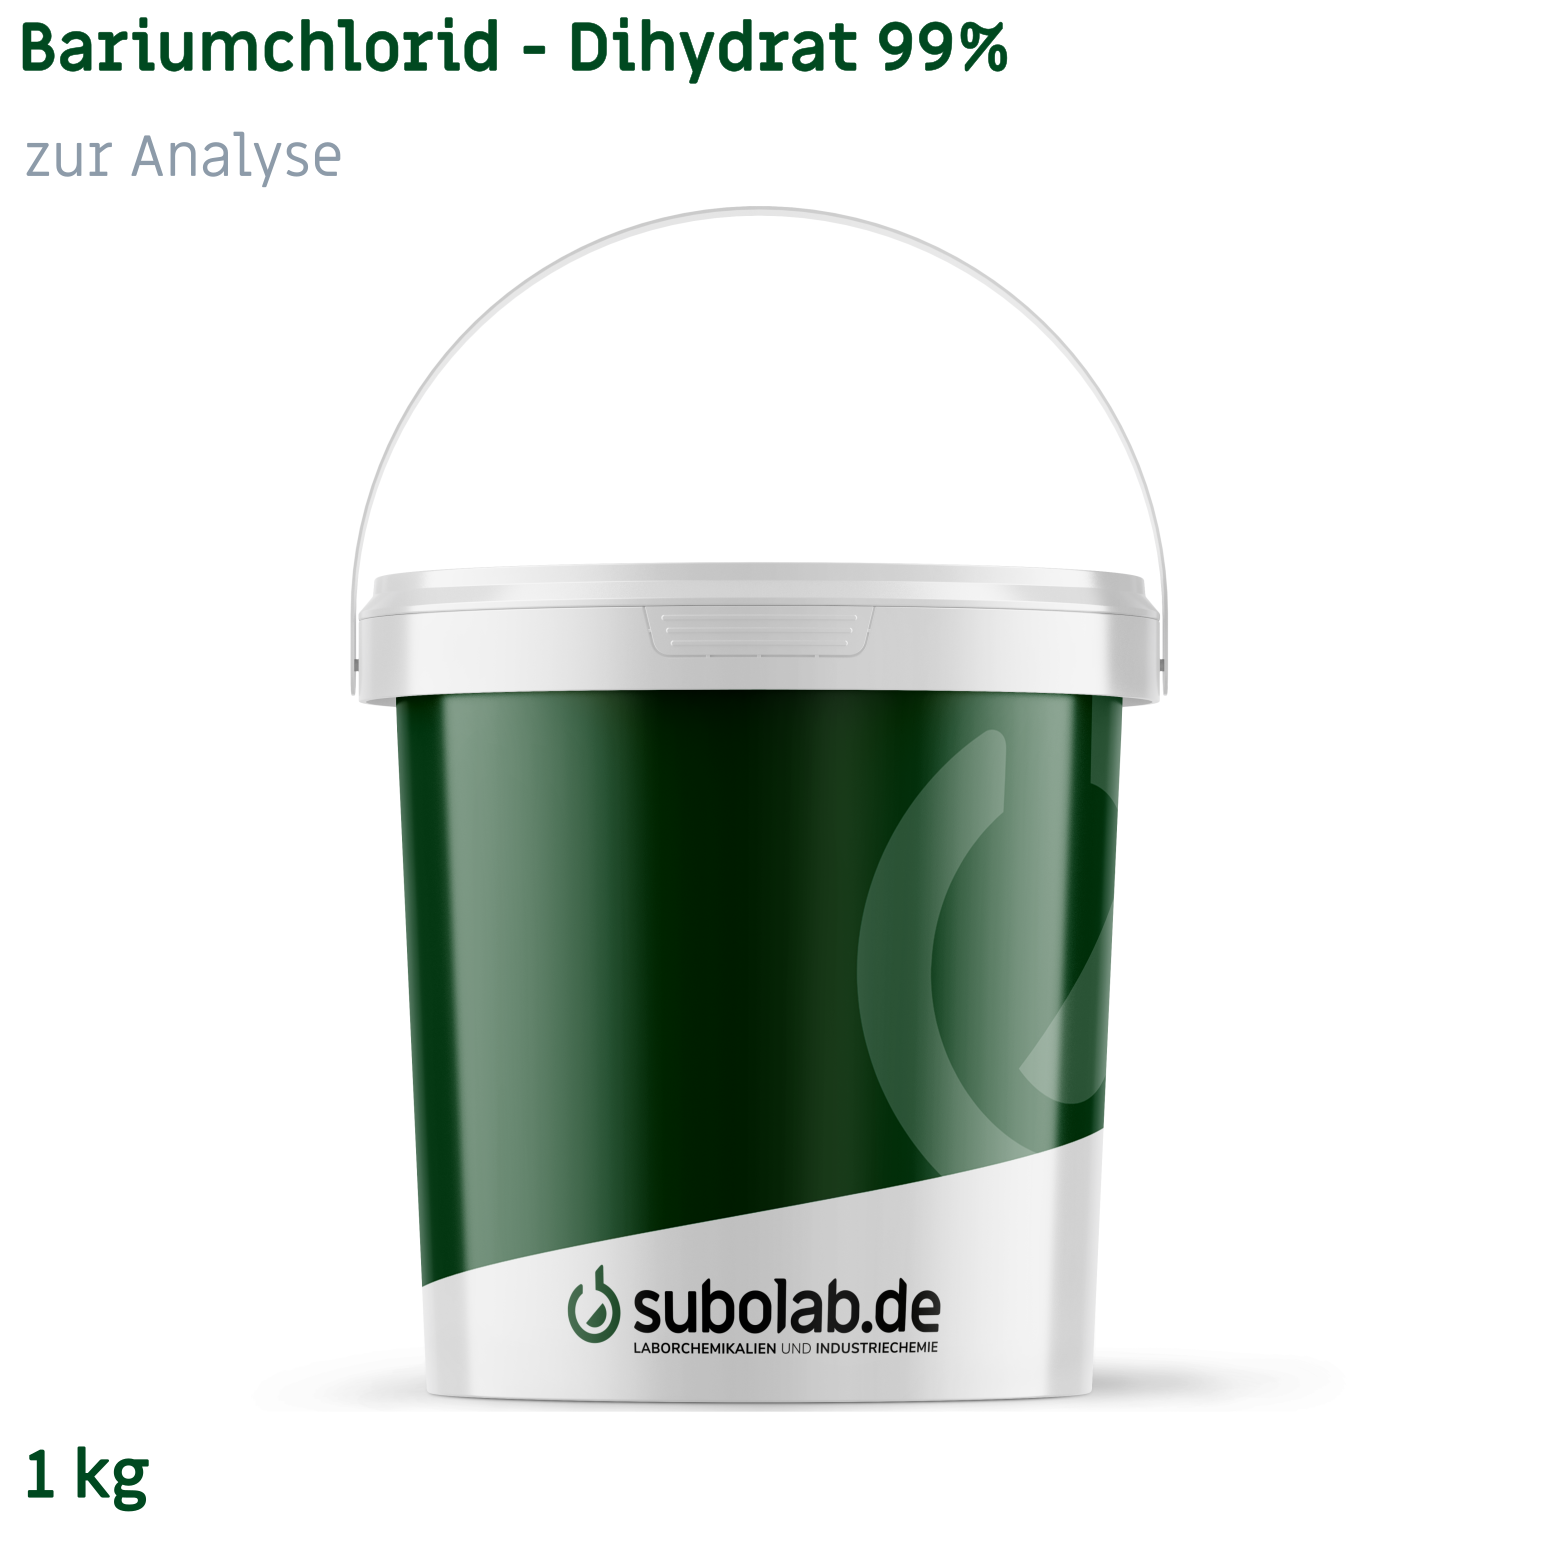 Bild von Bariumchlorid - Dihydrat 99% zur Analyse (1 kg)